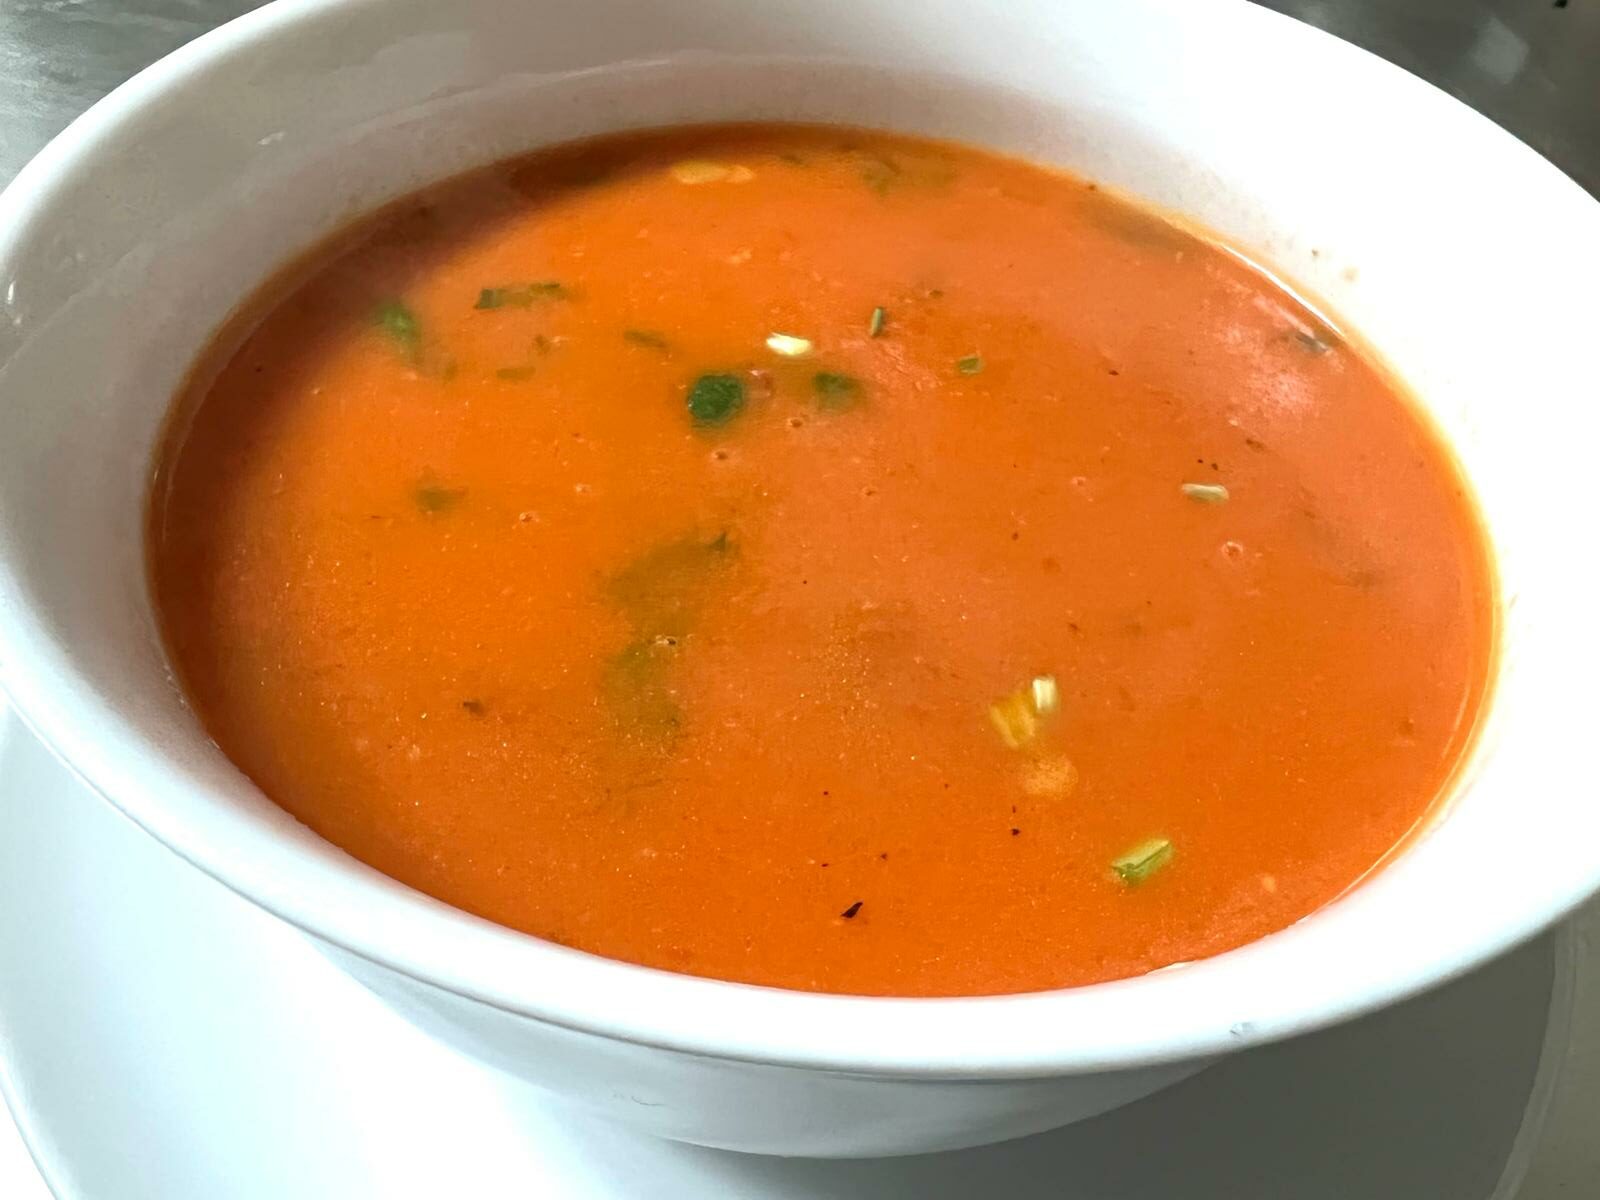  Indická paradajková polievka / Tomato soup 